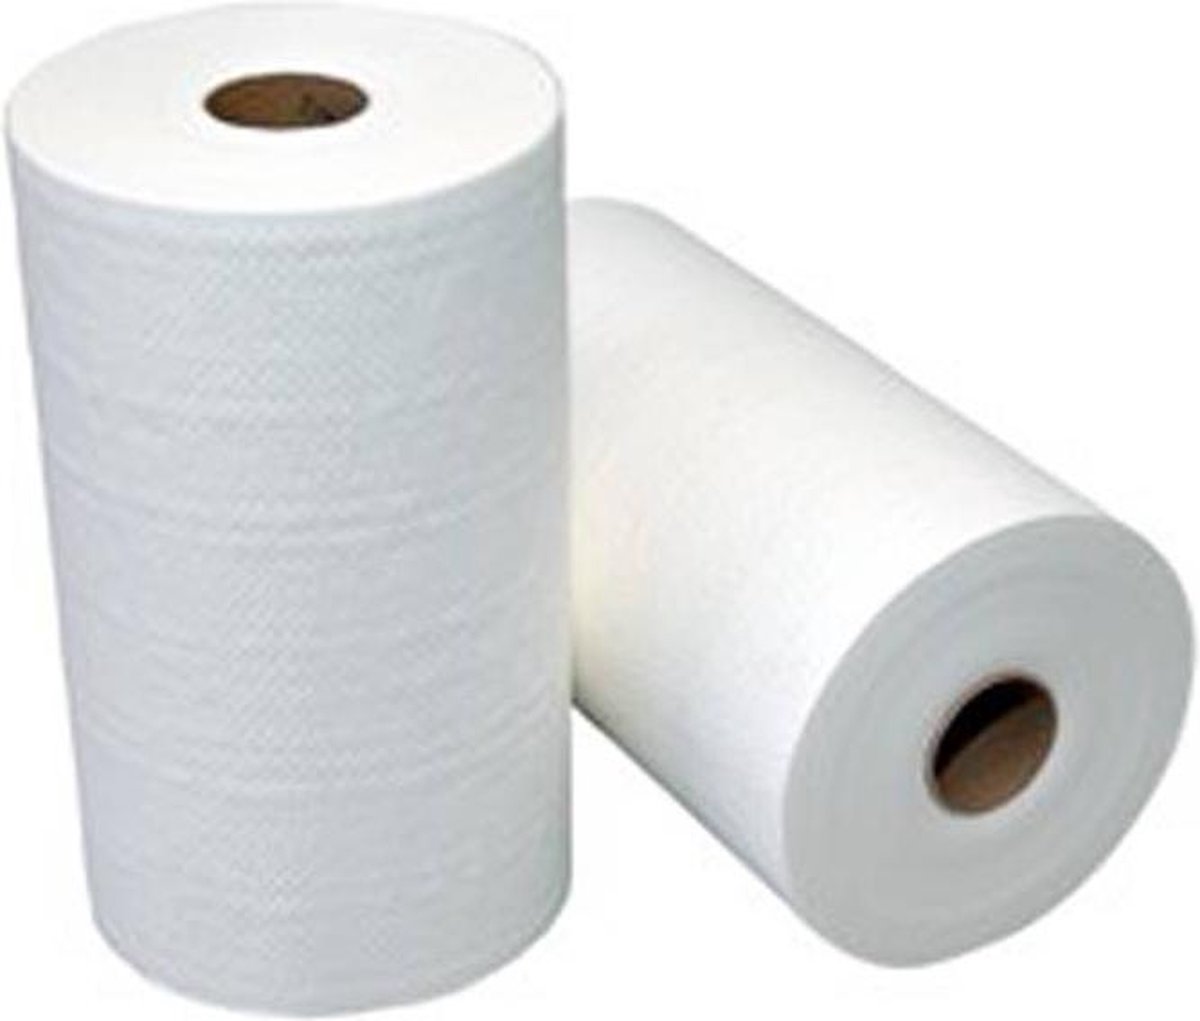 Vendor handdoekrollen, 2-laags, netversterkt wit, breedte 23 cm. Doos á 12 rollen x 60 meter.